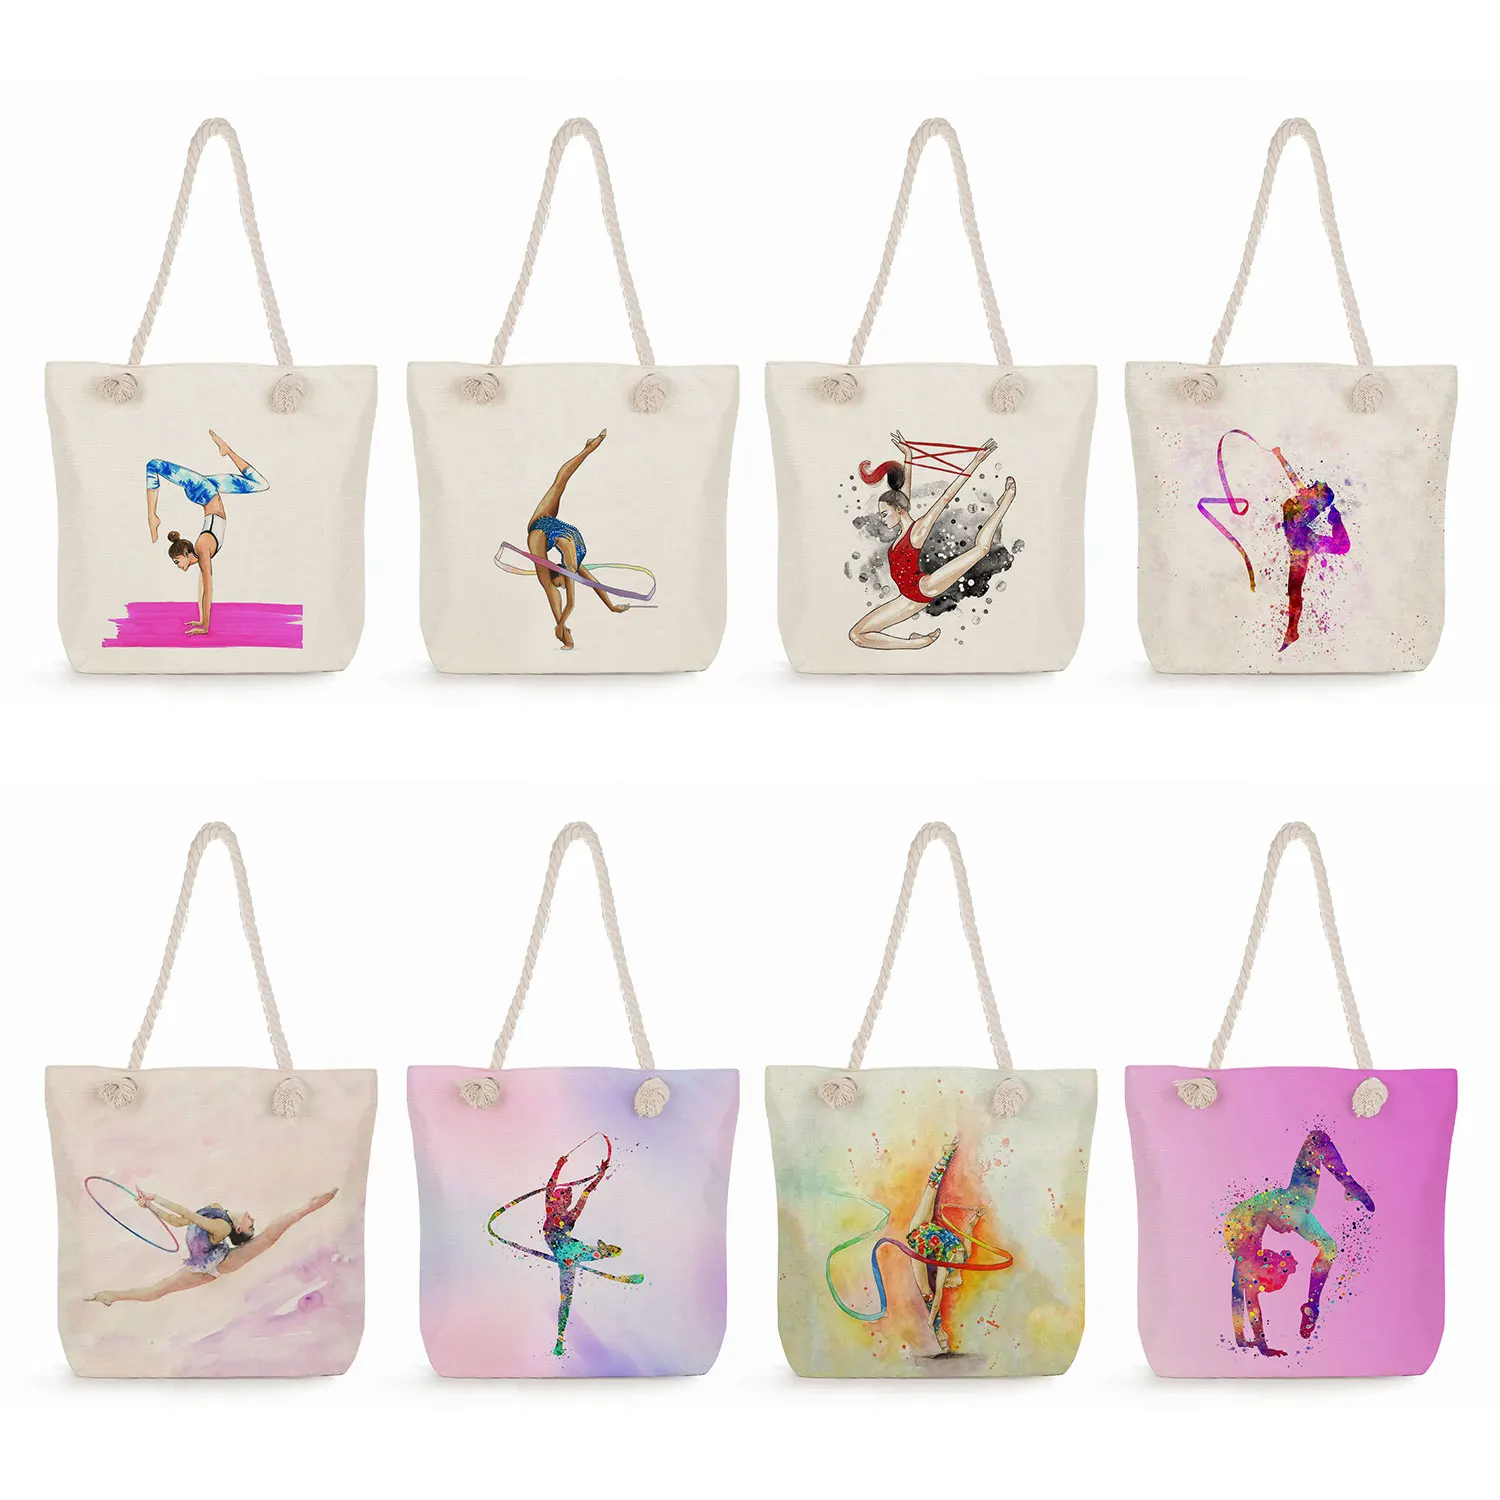 

Акварельные сумки с гимнастическим художественным принтом для женщин, женские сумки-тоуты, вместительная сумка для гимнастики и хранения, модные сумки через плечо